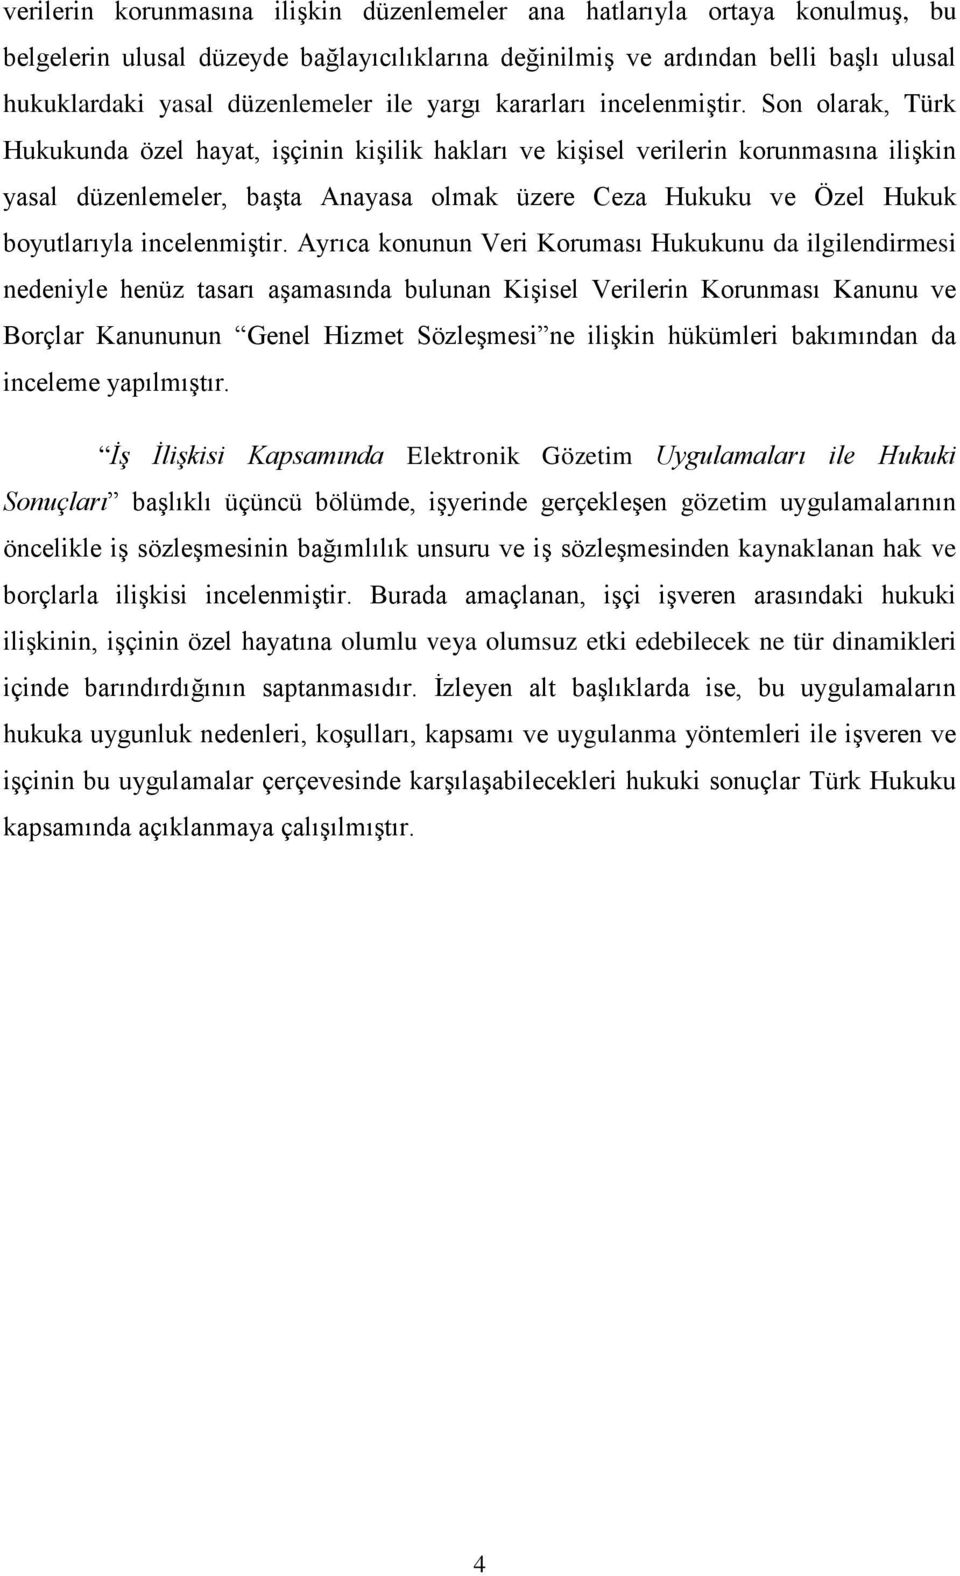 Son olarak, Türk Hukukunda özel hayat, işçinin kişilik hakları ve kişisel verilerin korunmasına ilişkin yasal düzenlemeler, başta Anayasa olmak üzere Ceza Hukuku ve Özel Hukuk boyutlarıyla